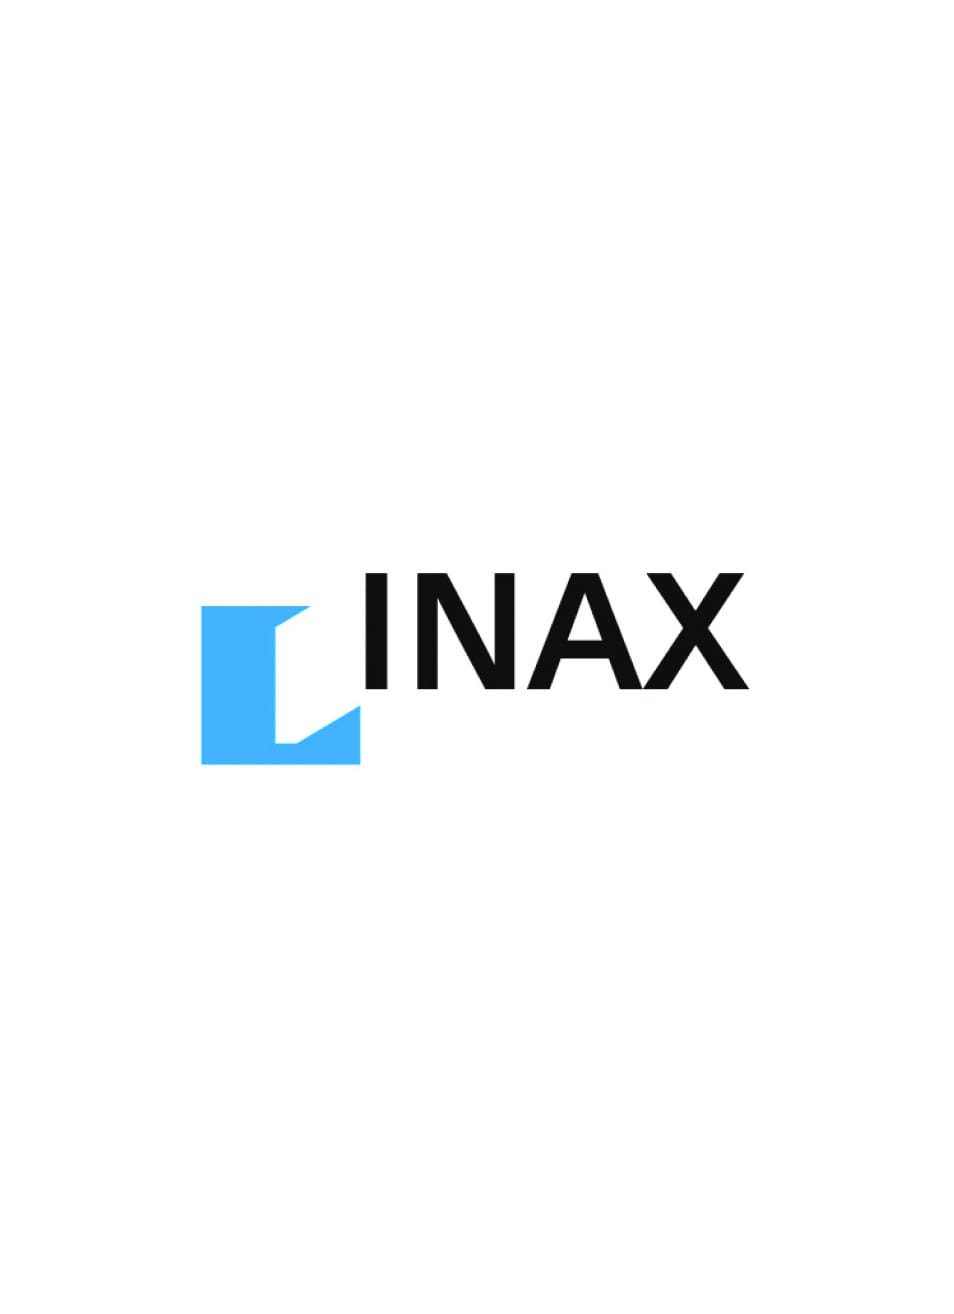 Đổi tên công ty thành Tập đoàn INAX.